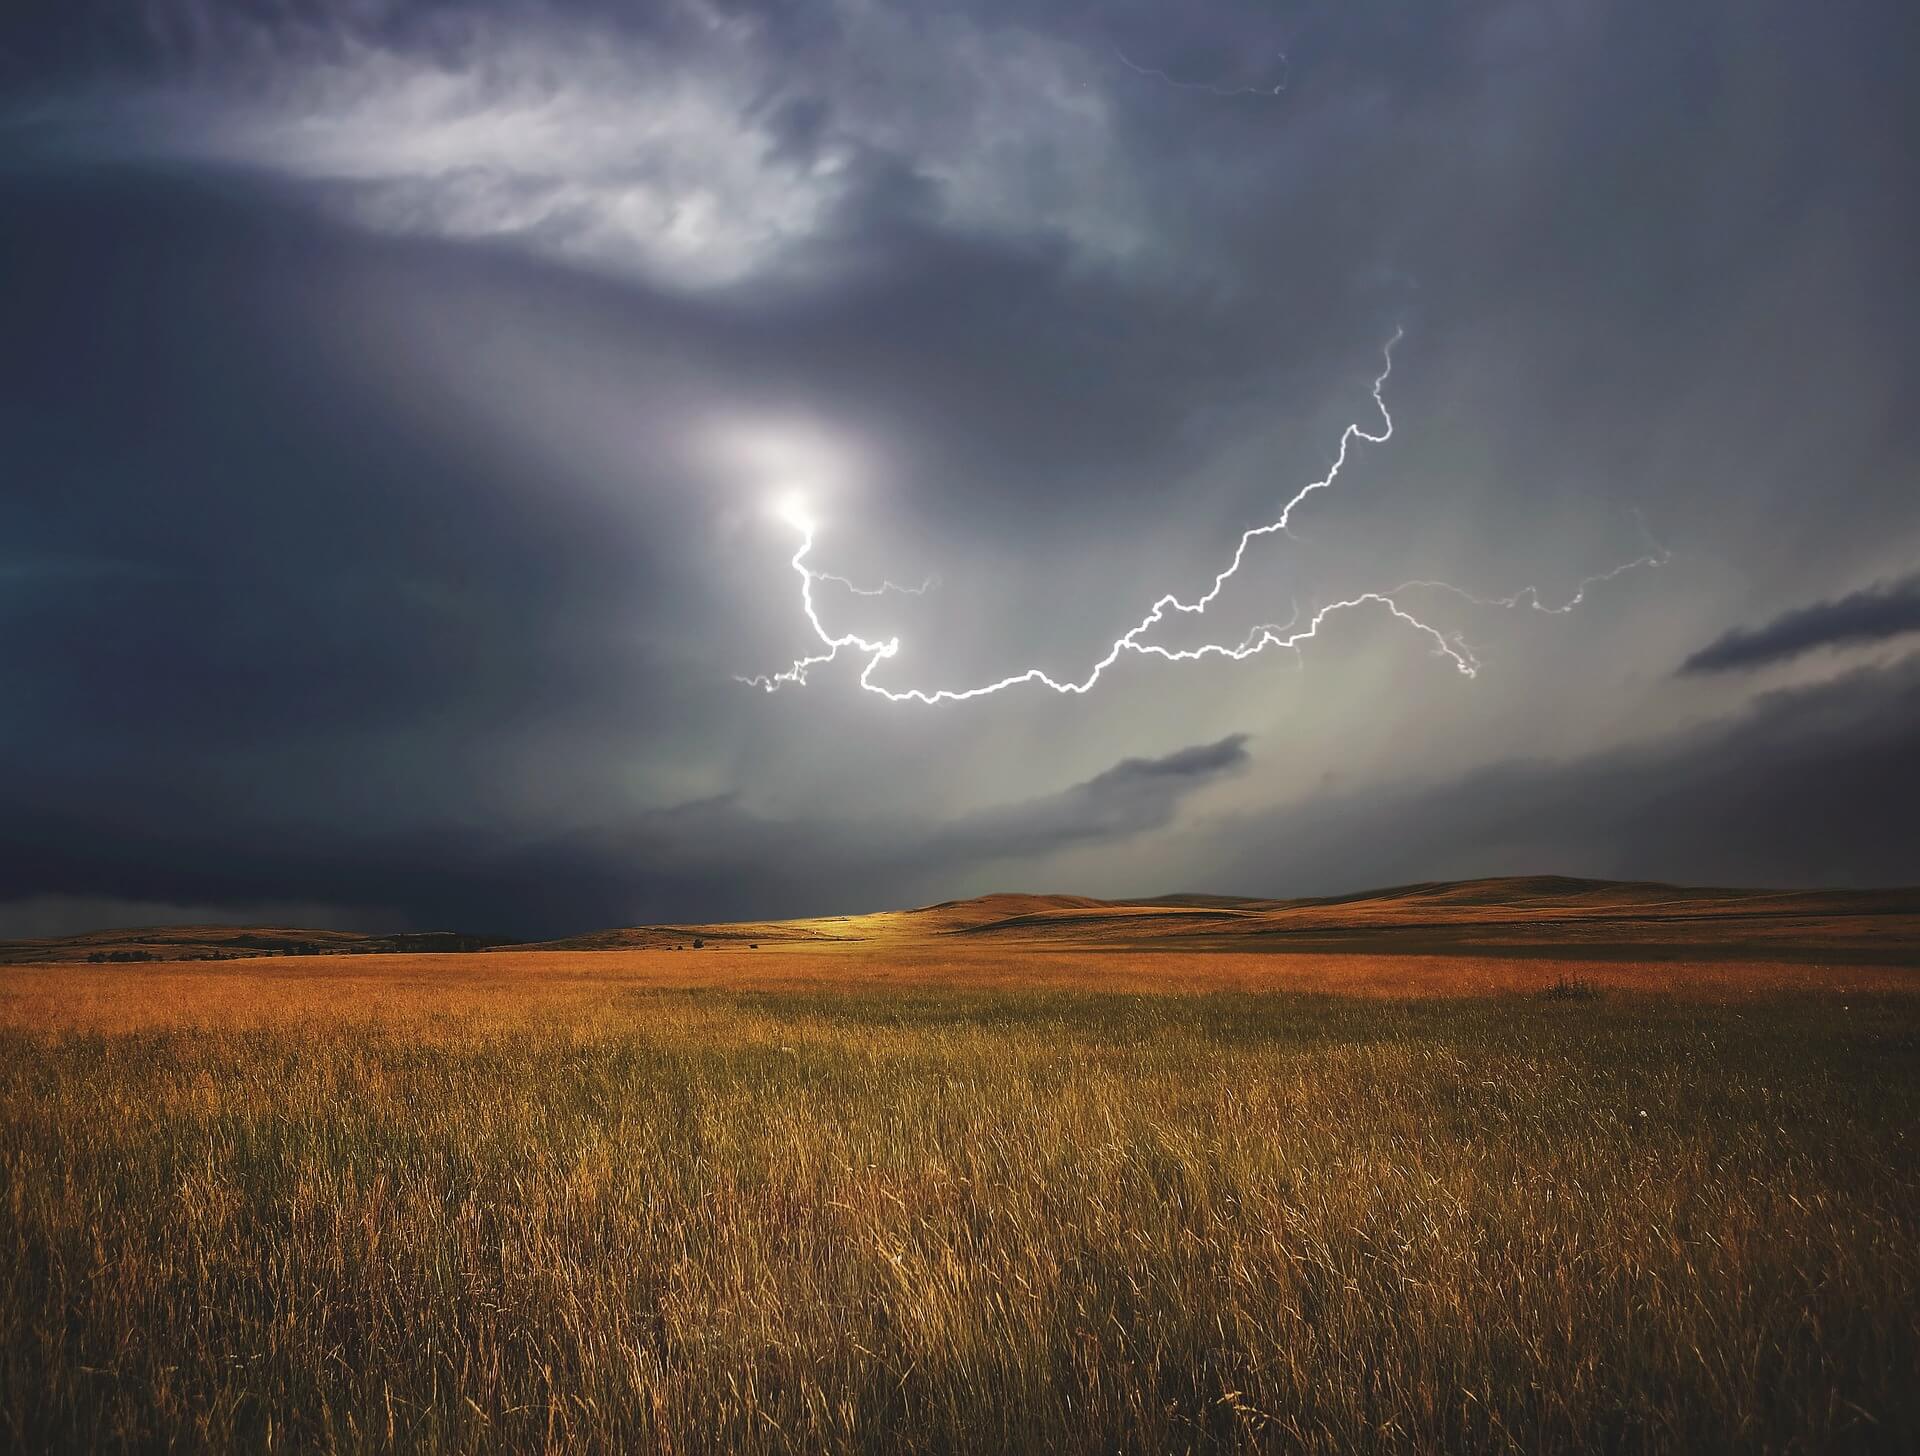 Gewitter mit Blitz, Quelle: pixabay.com